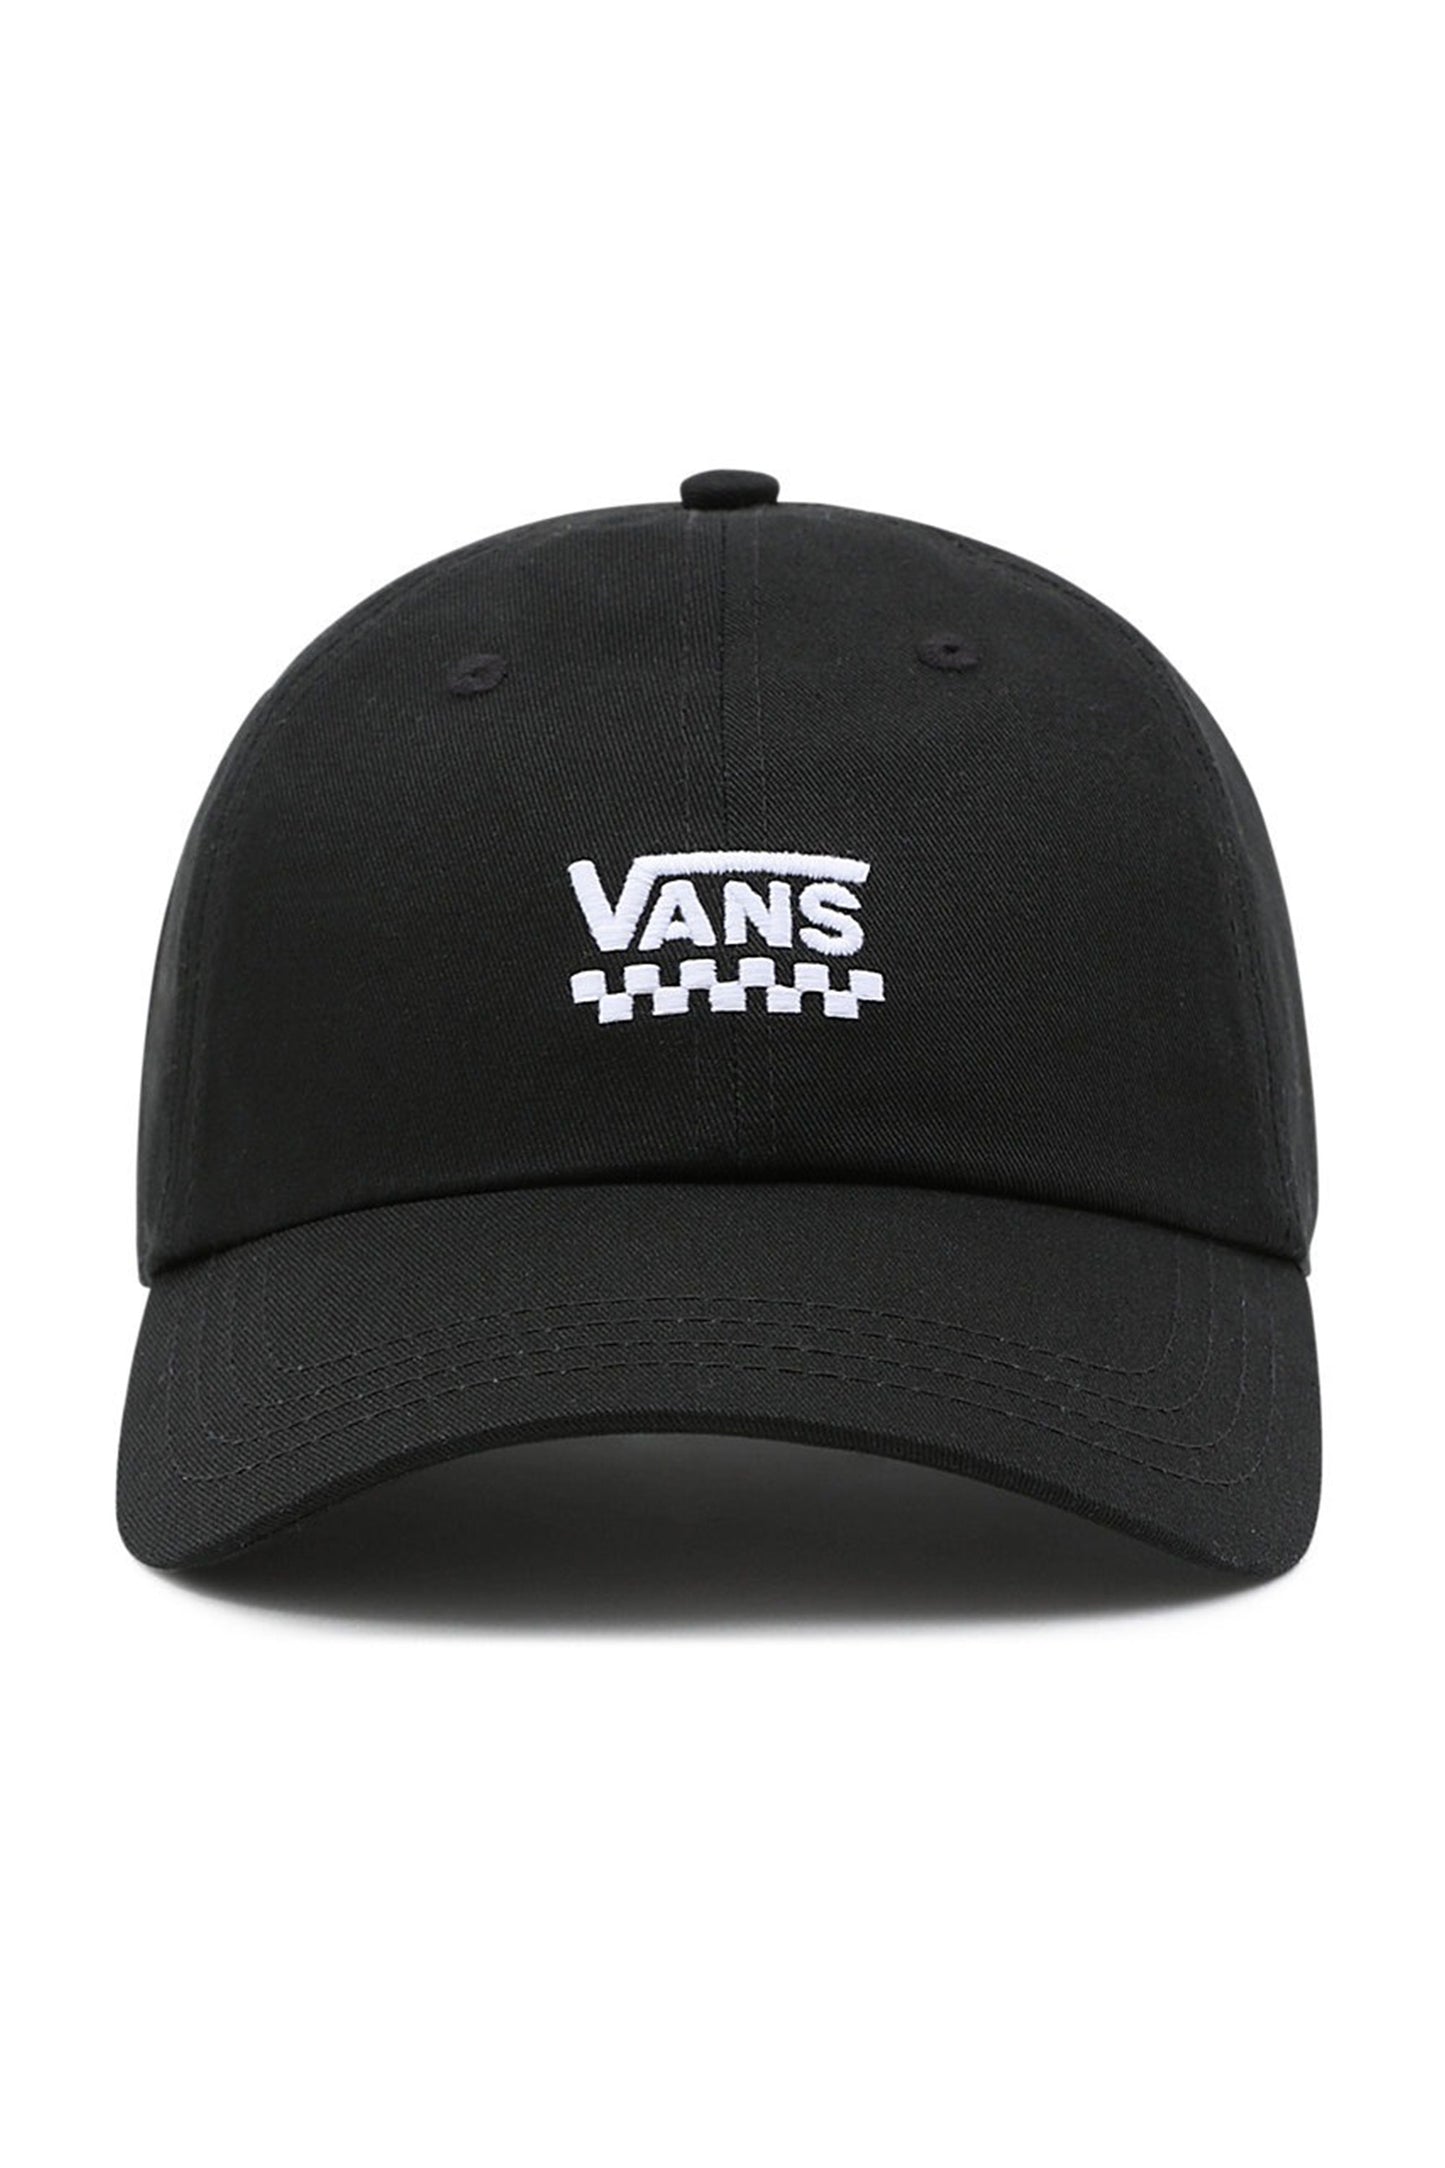     Pukas-Surf-Shop-Vans-Hat-Court-Side-Hat